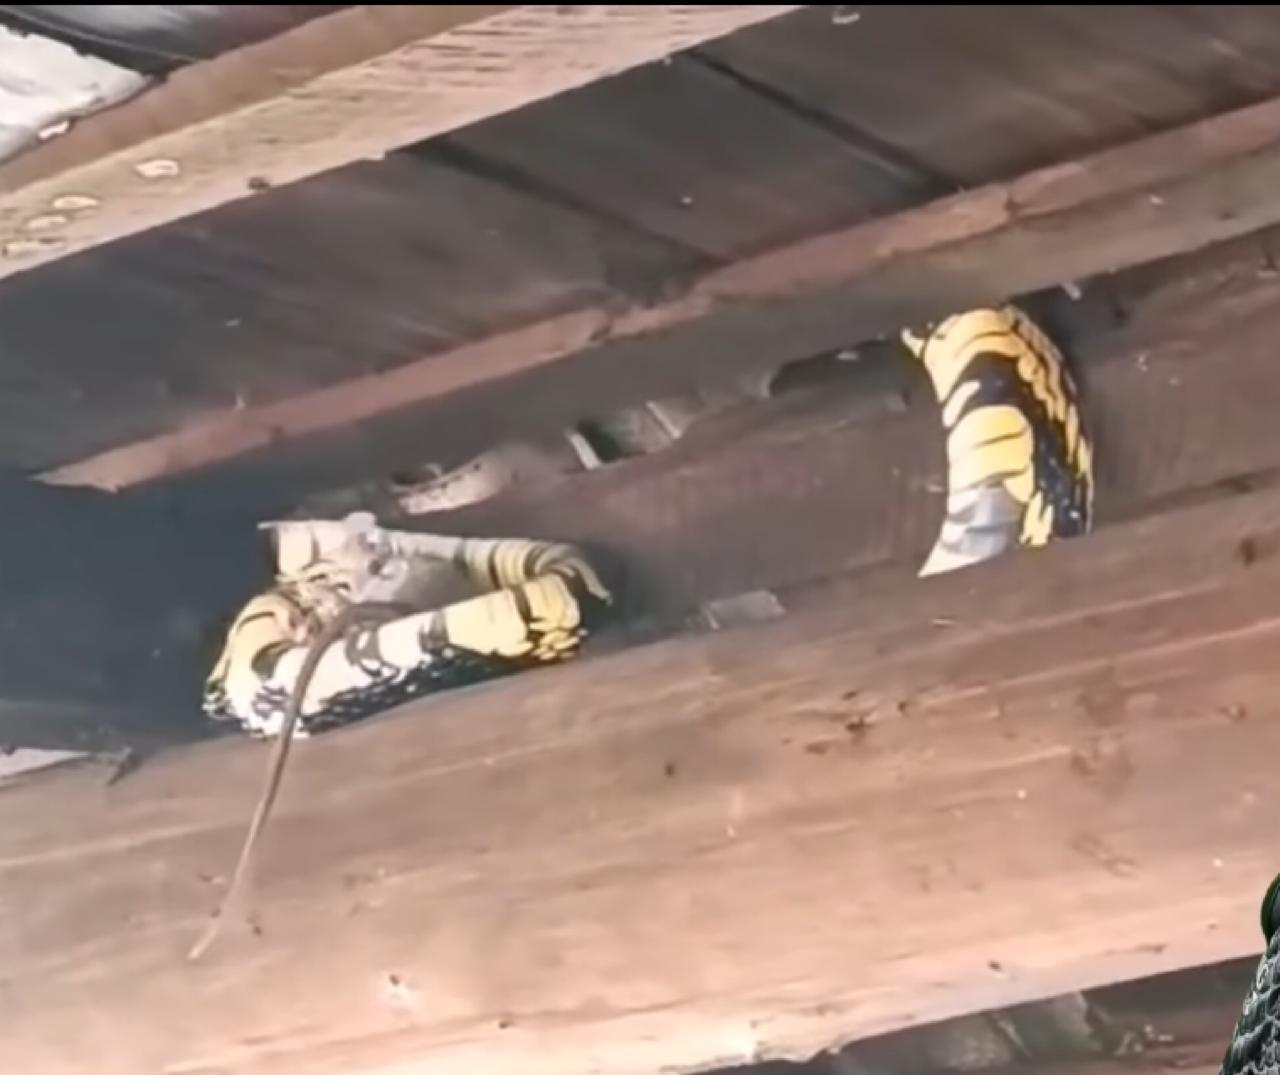 Cobra caninana é flagrada devorando rato em chácara: guardiã do telhado.